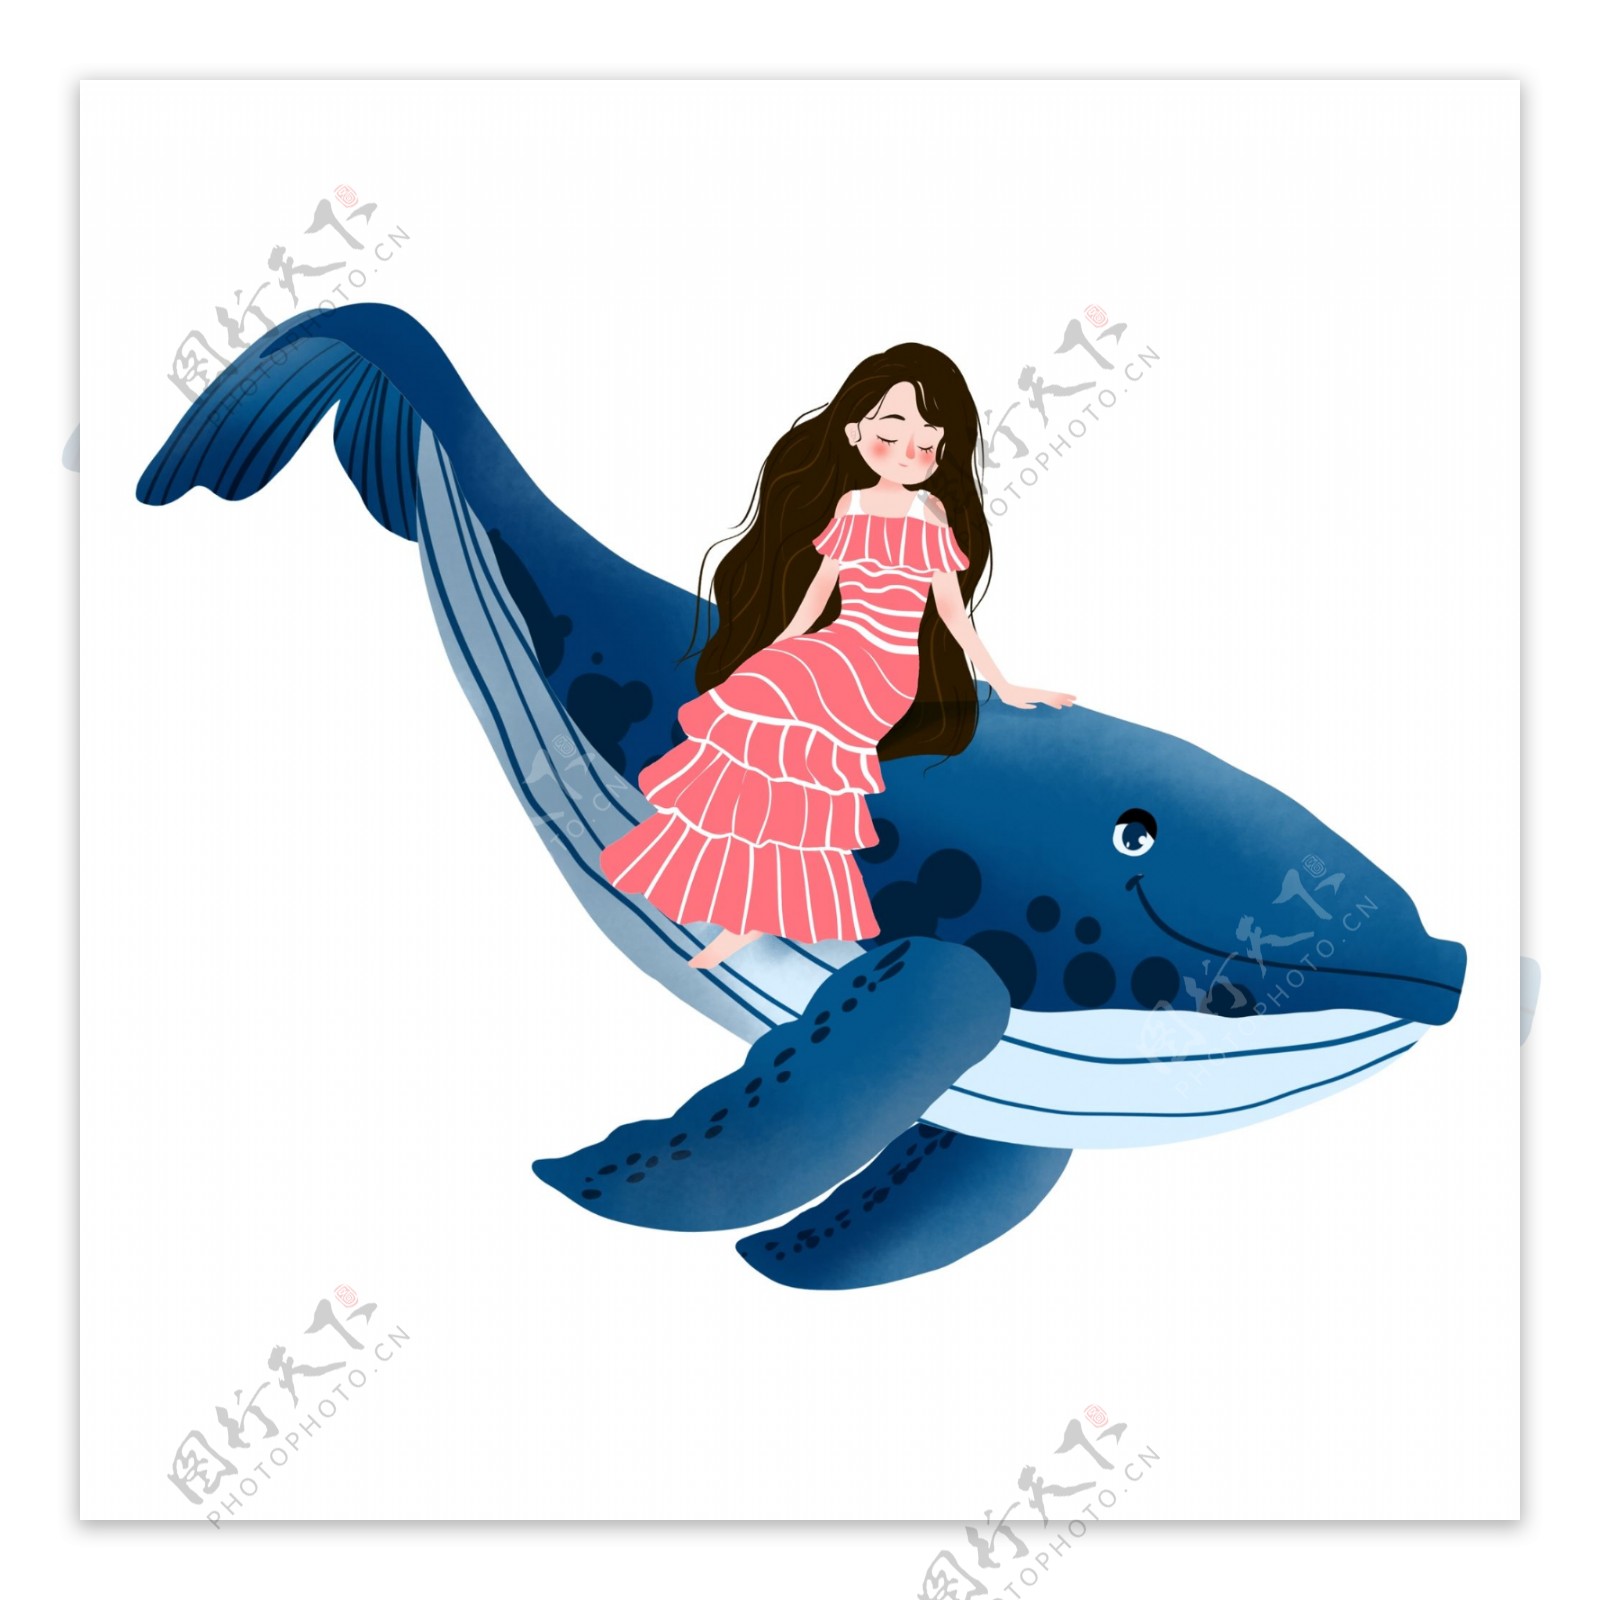 卡通简约女孩和鲸鱼装饰素材